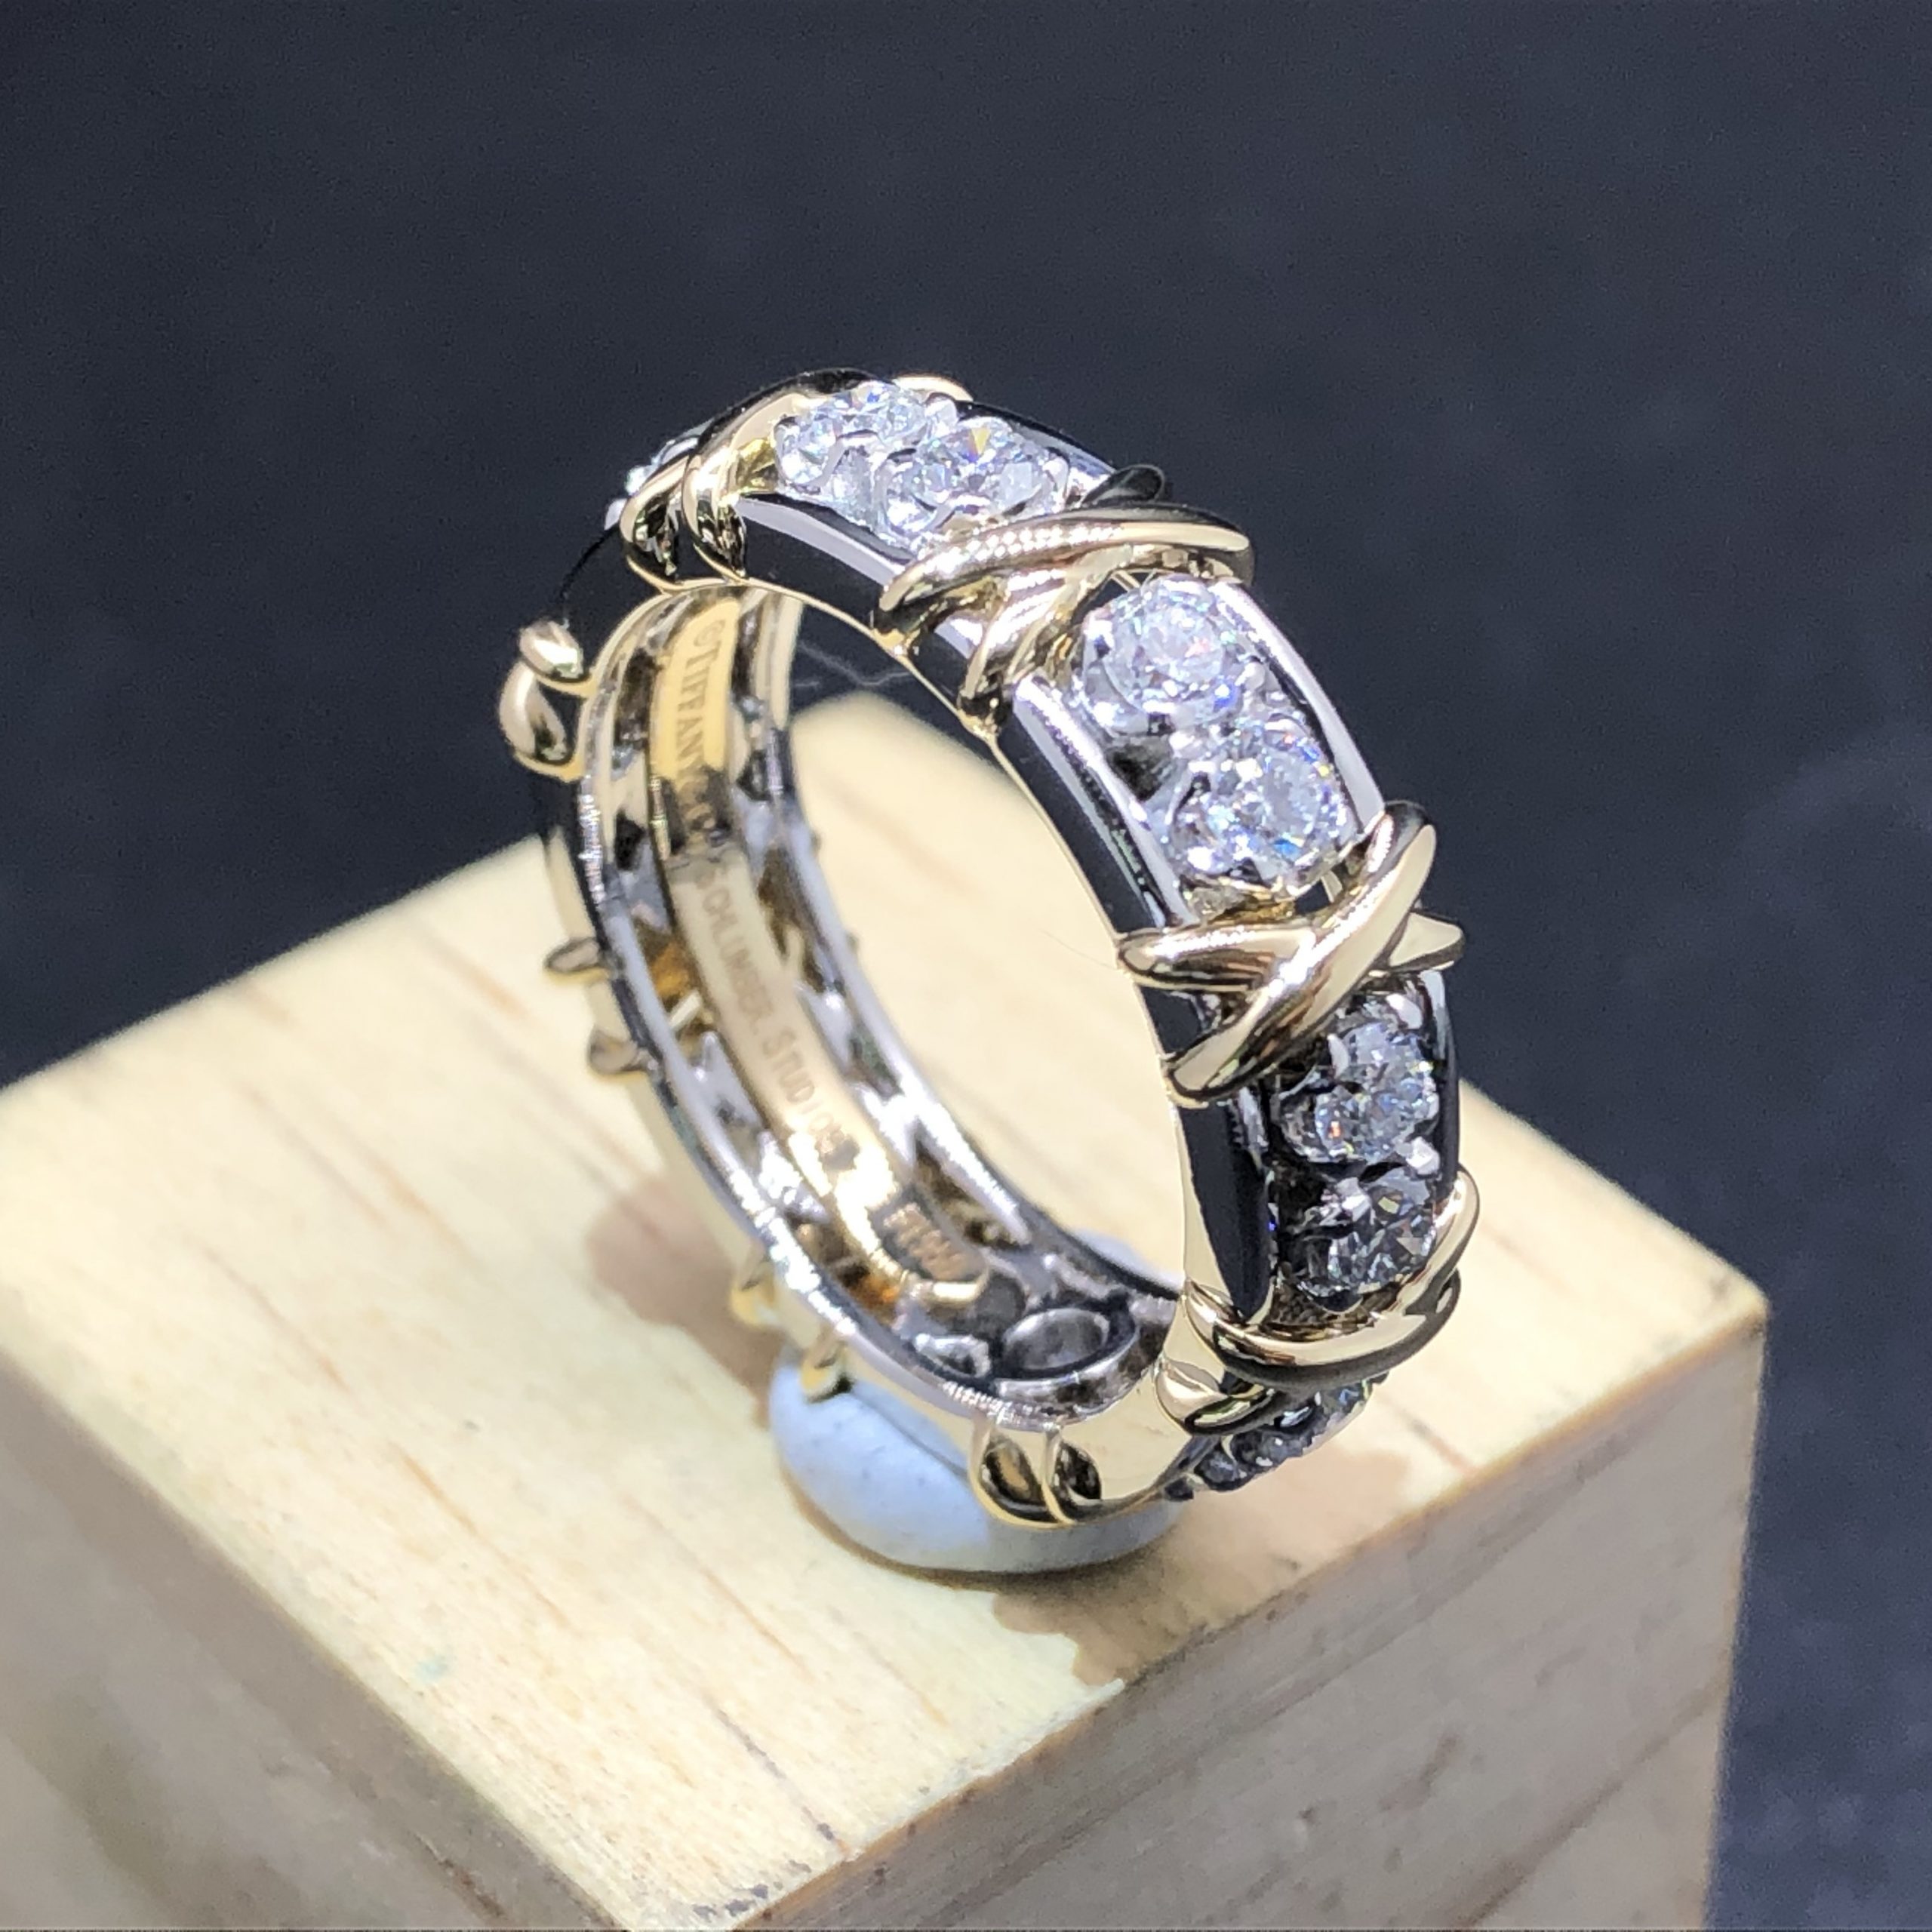 Tiffany & Co. Bague Schlumberger seize diamants sur mesure en or jaune 18 carats et platine